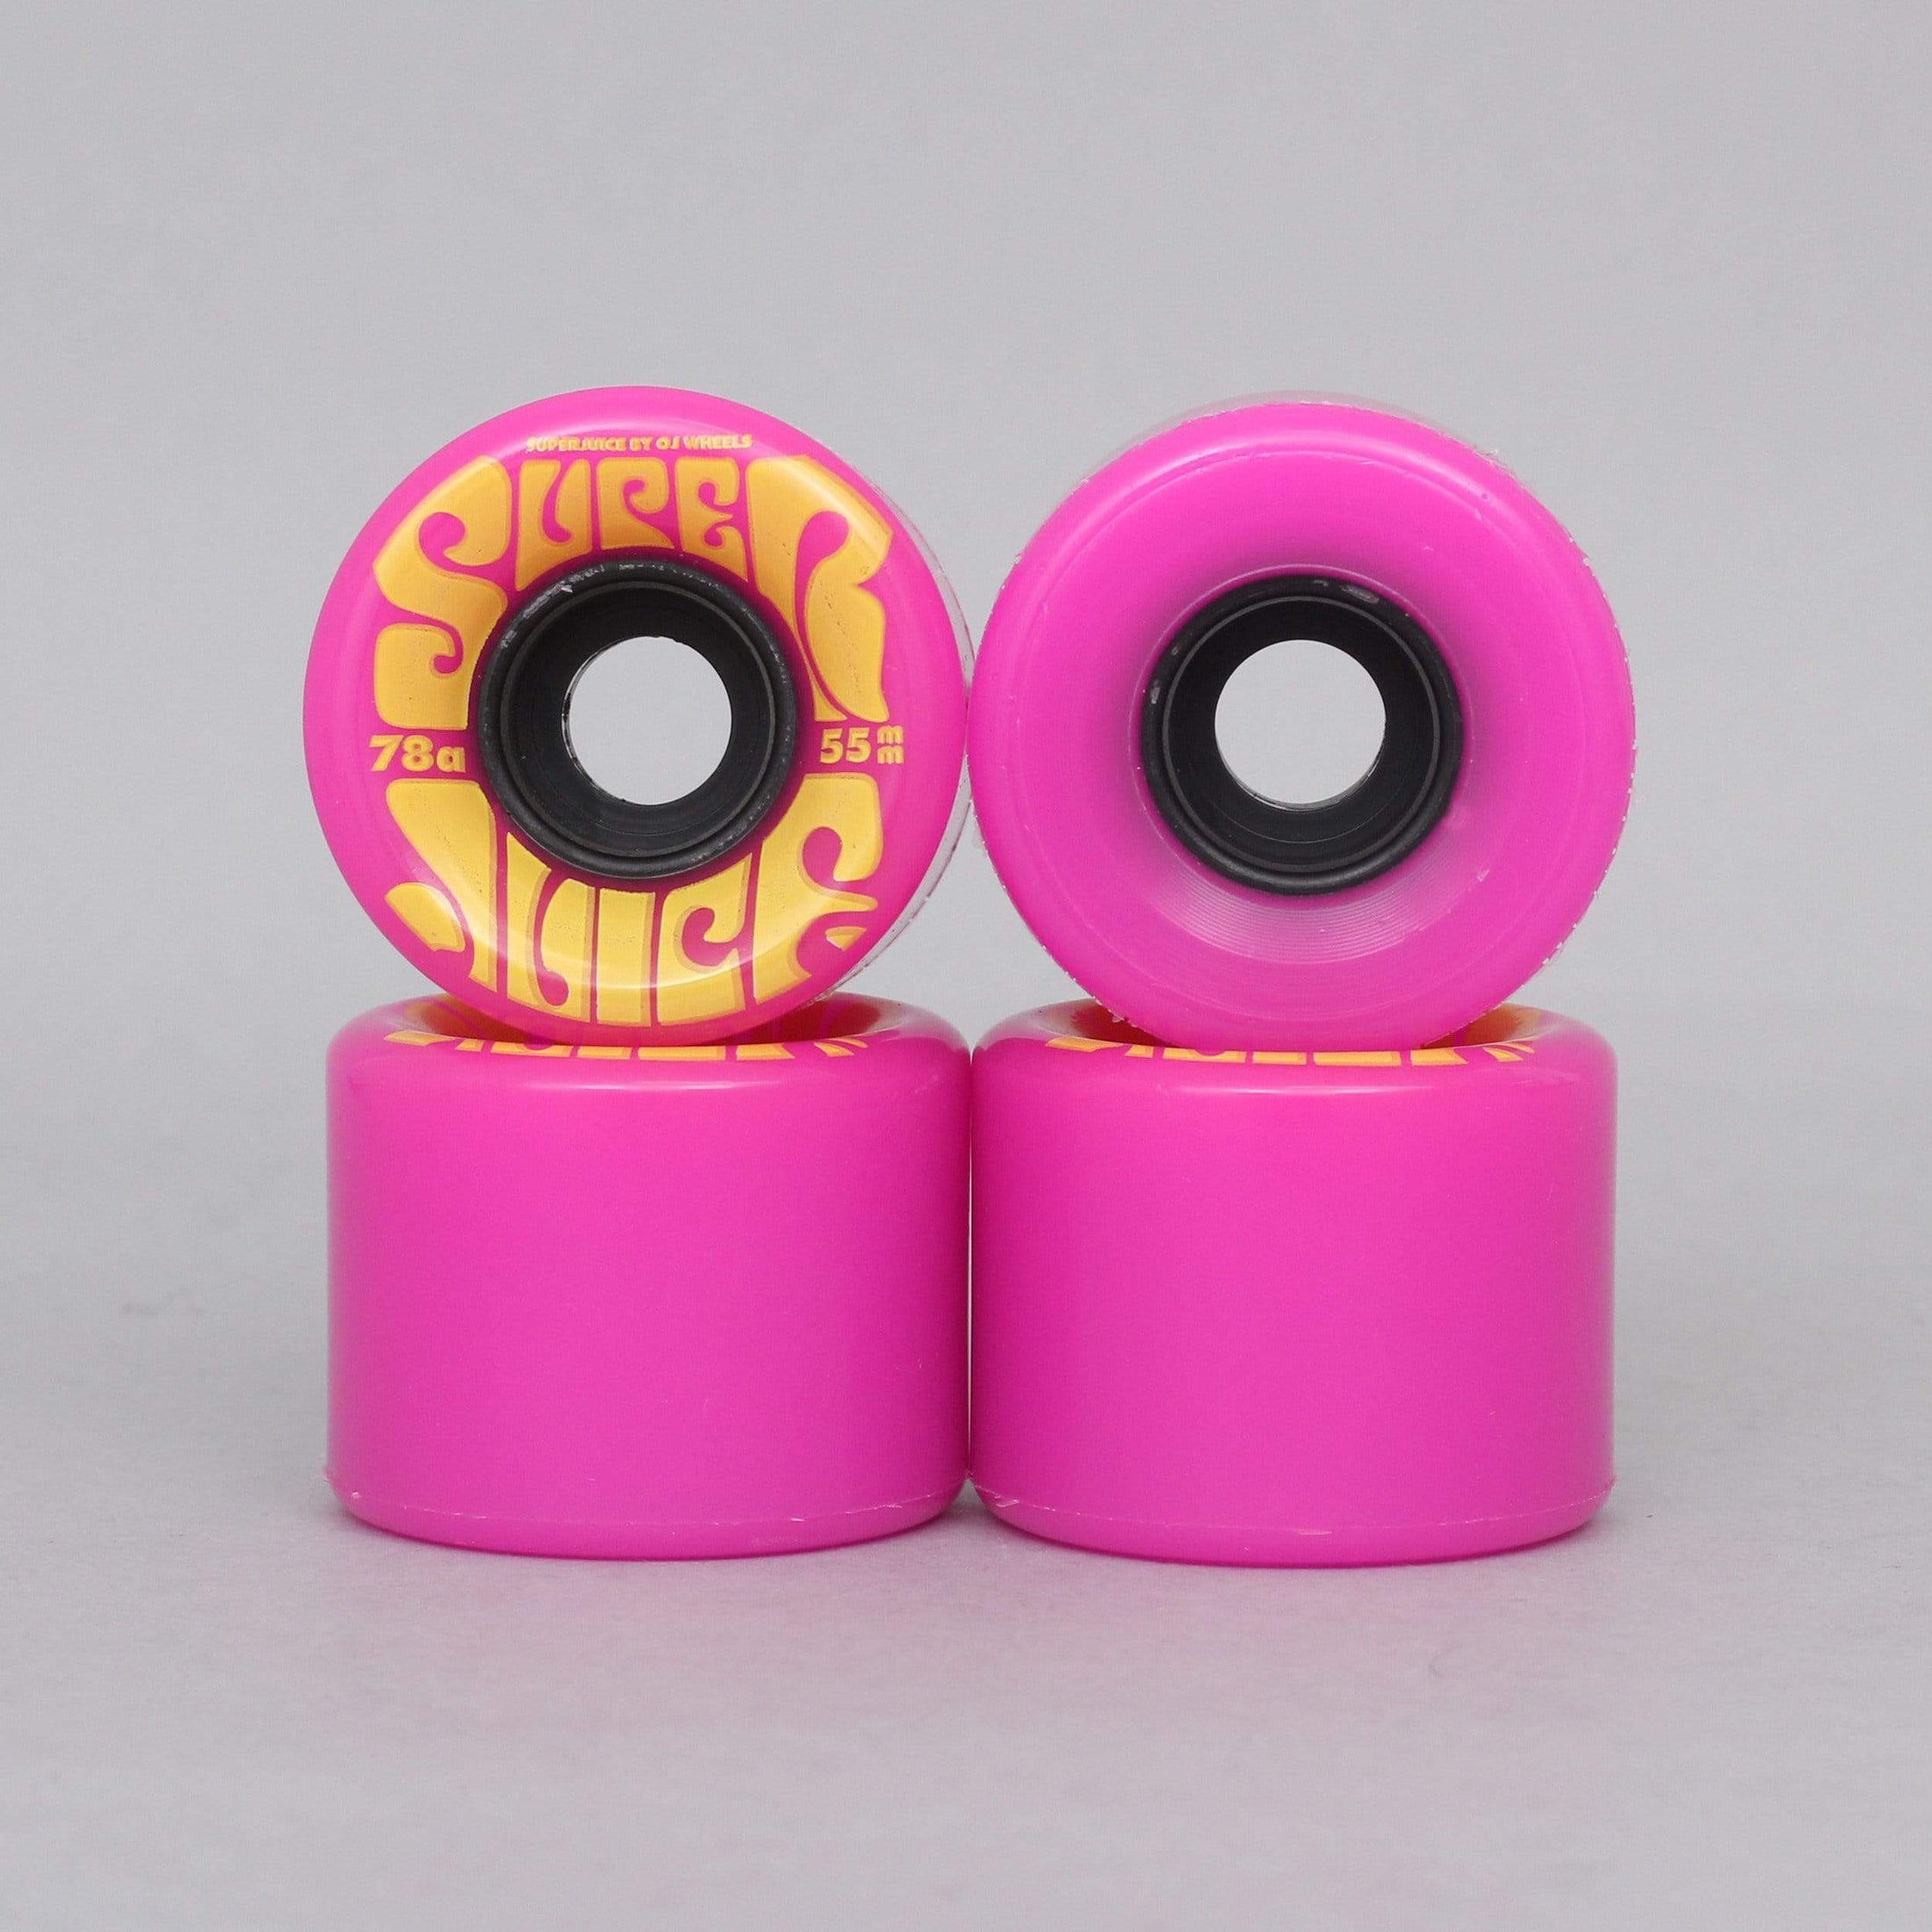 OJ 55mm 78A Mini Super Juice Soft Skateboard Wheels Pink